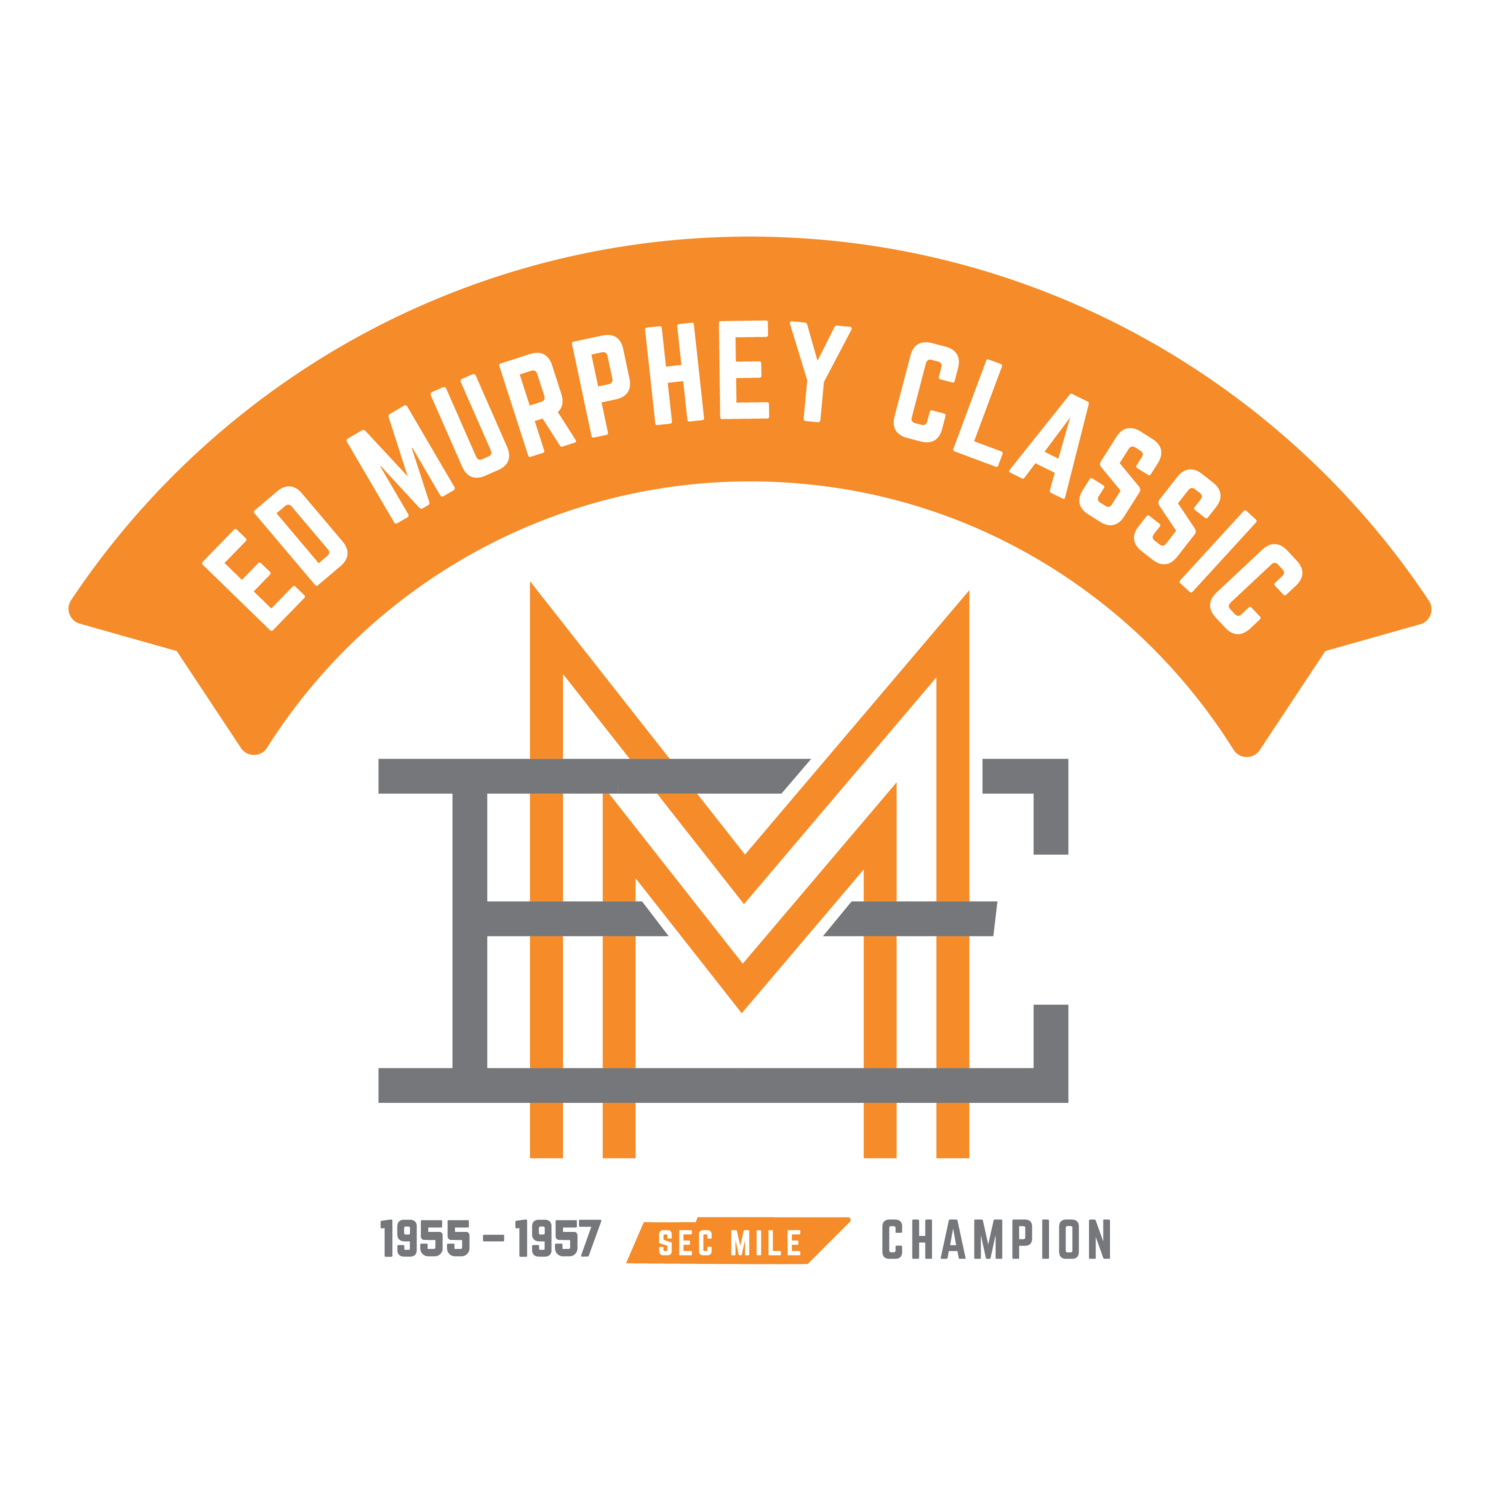 Ed Murphey Classic